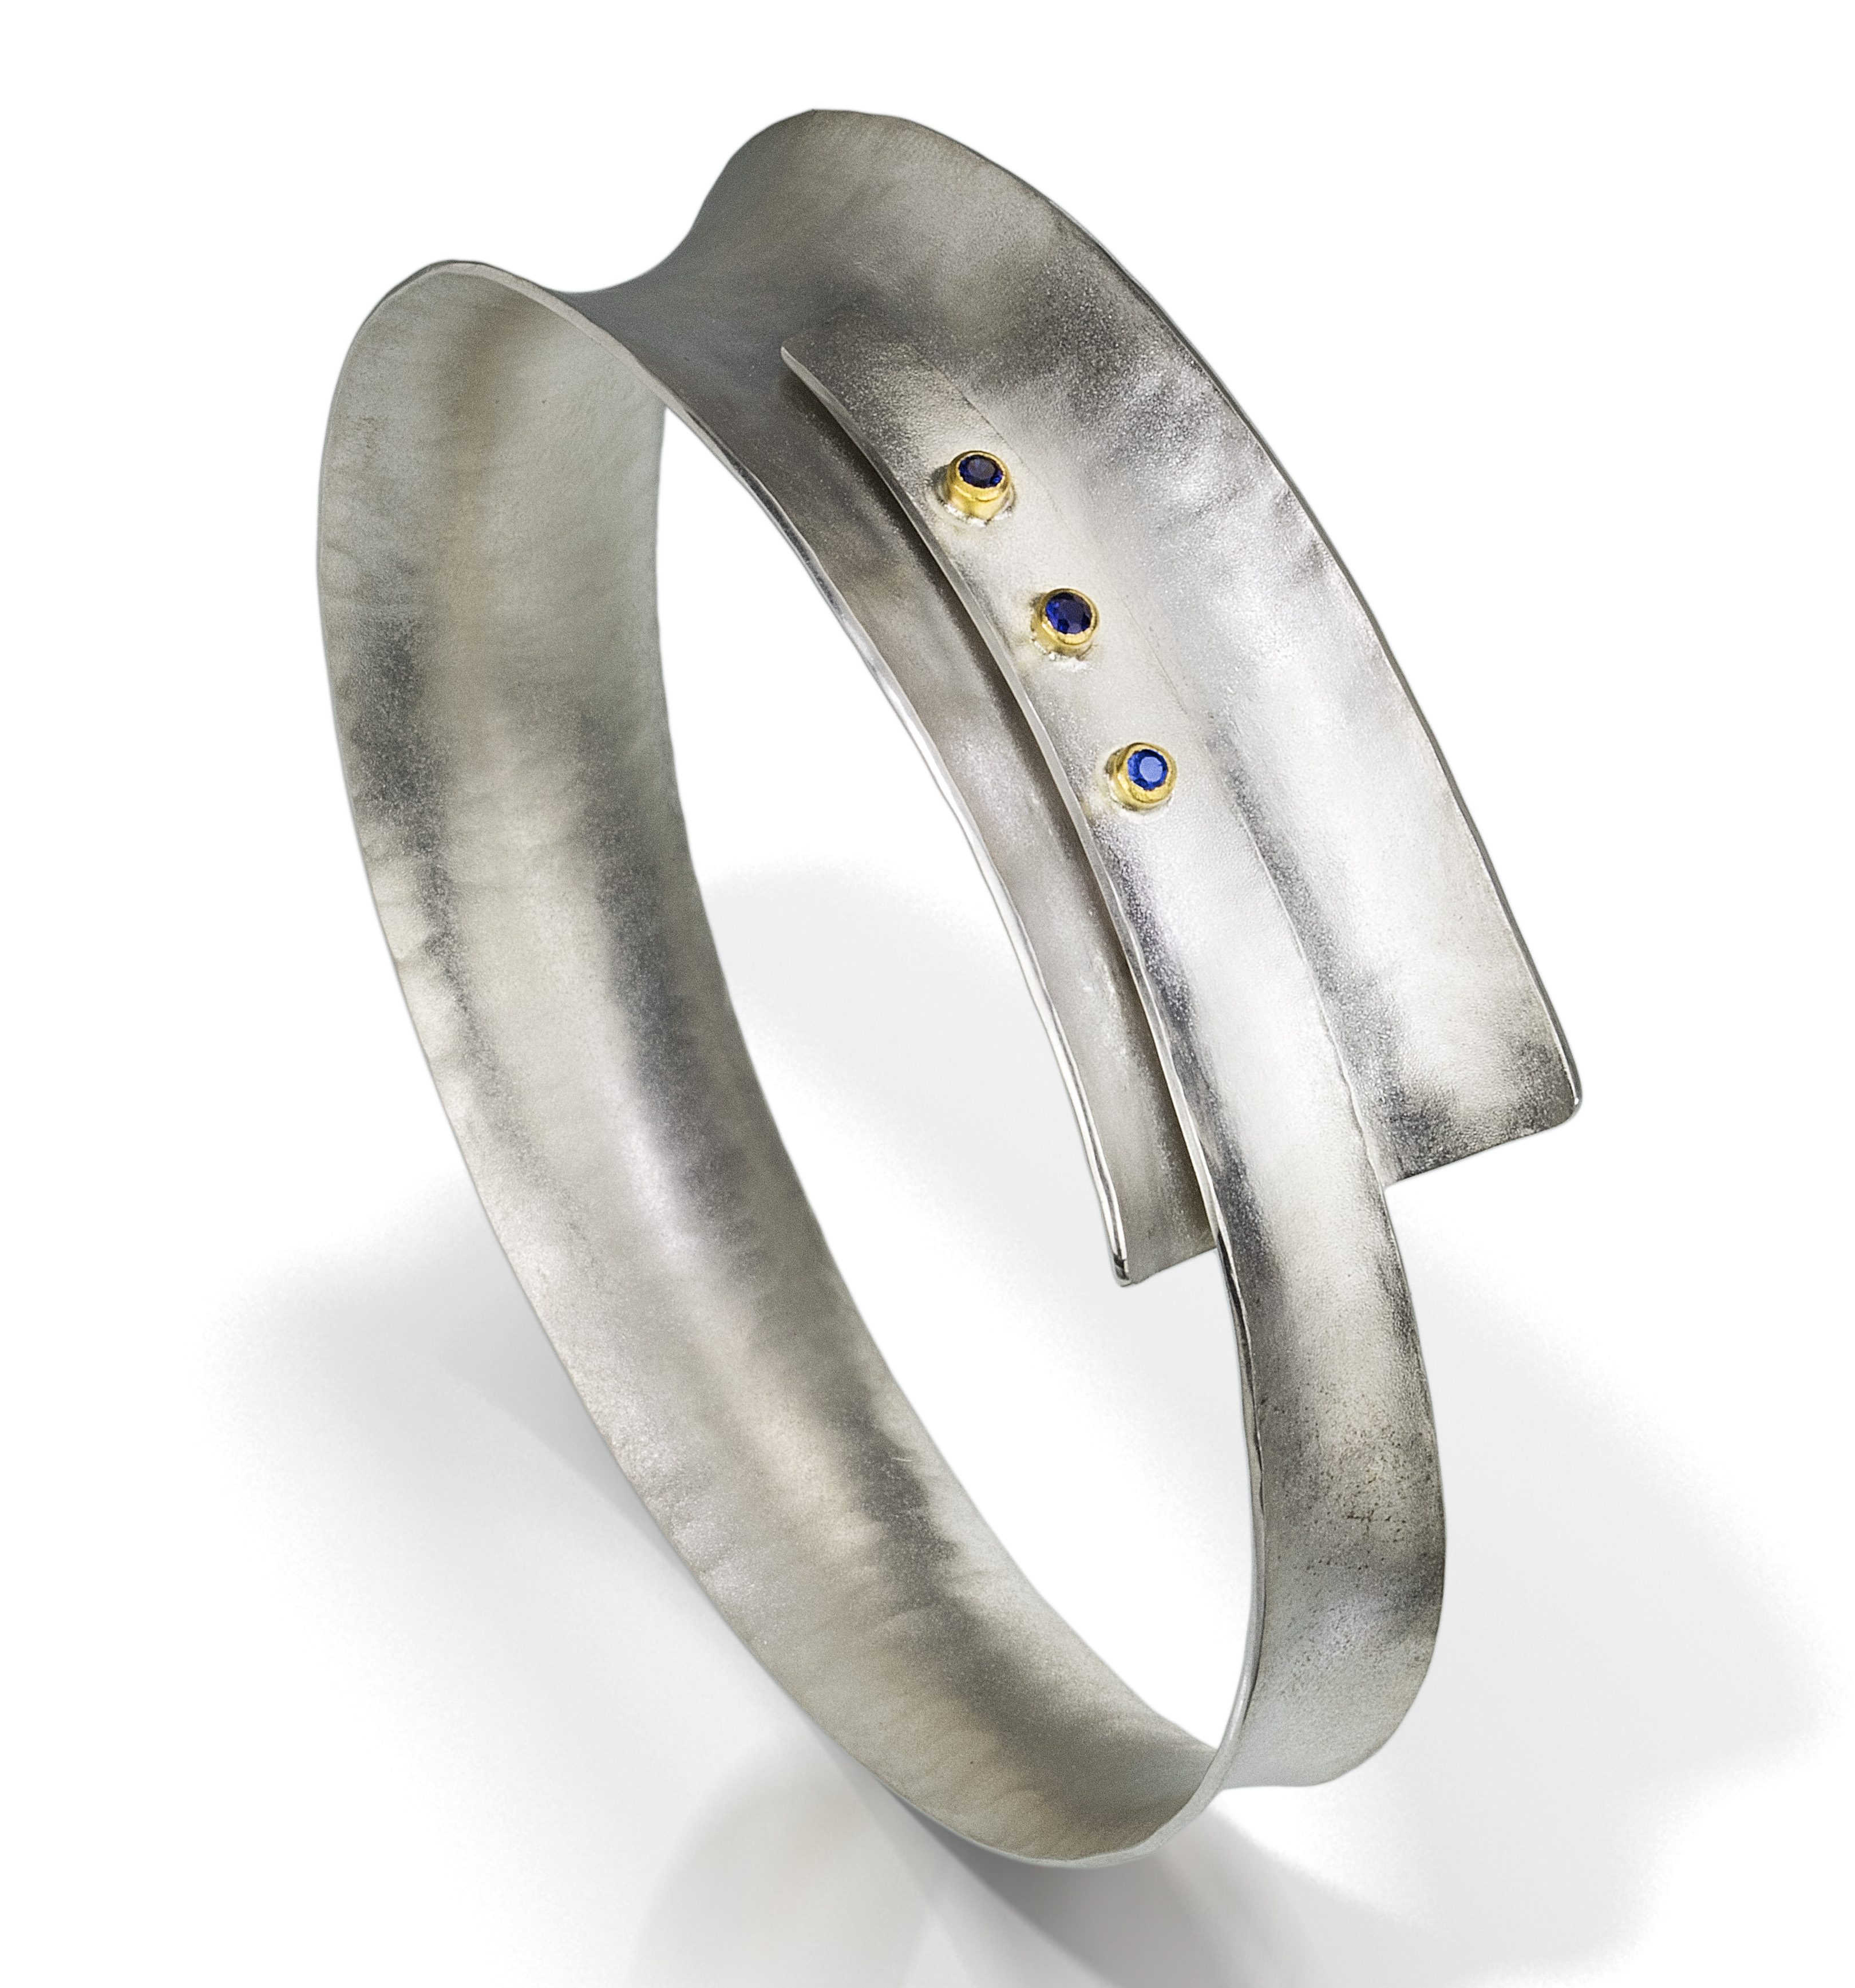 TK Metal Arts Crescence bracelet | JCK On Your Market